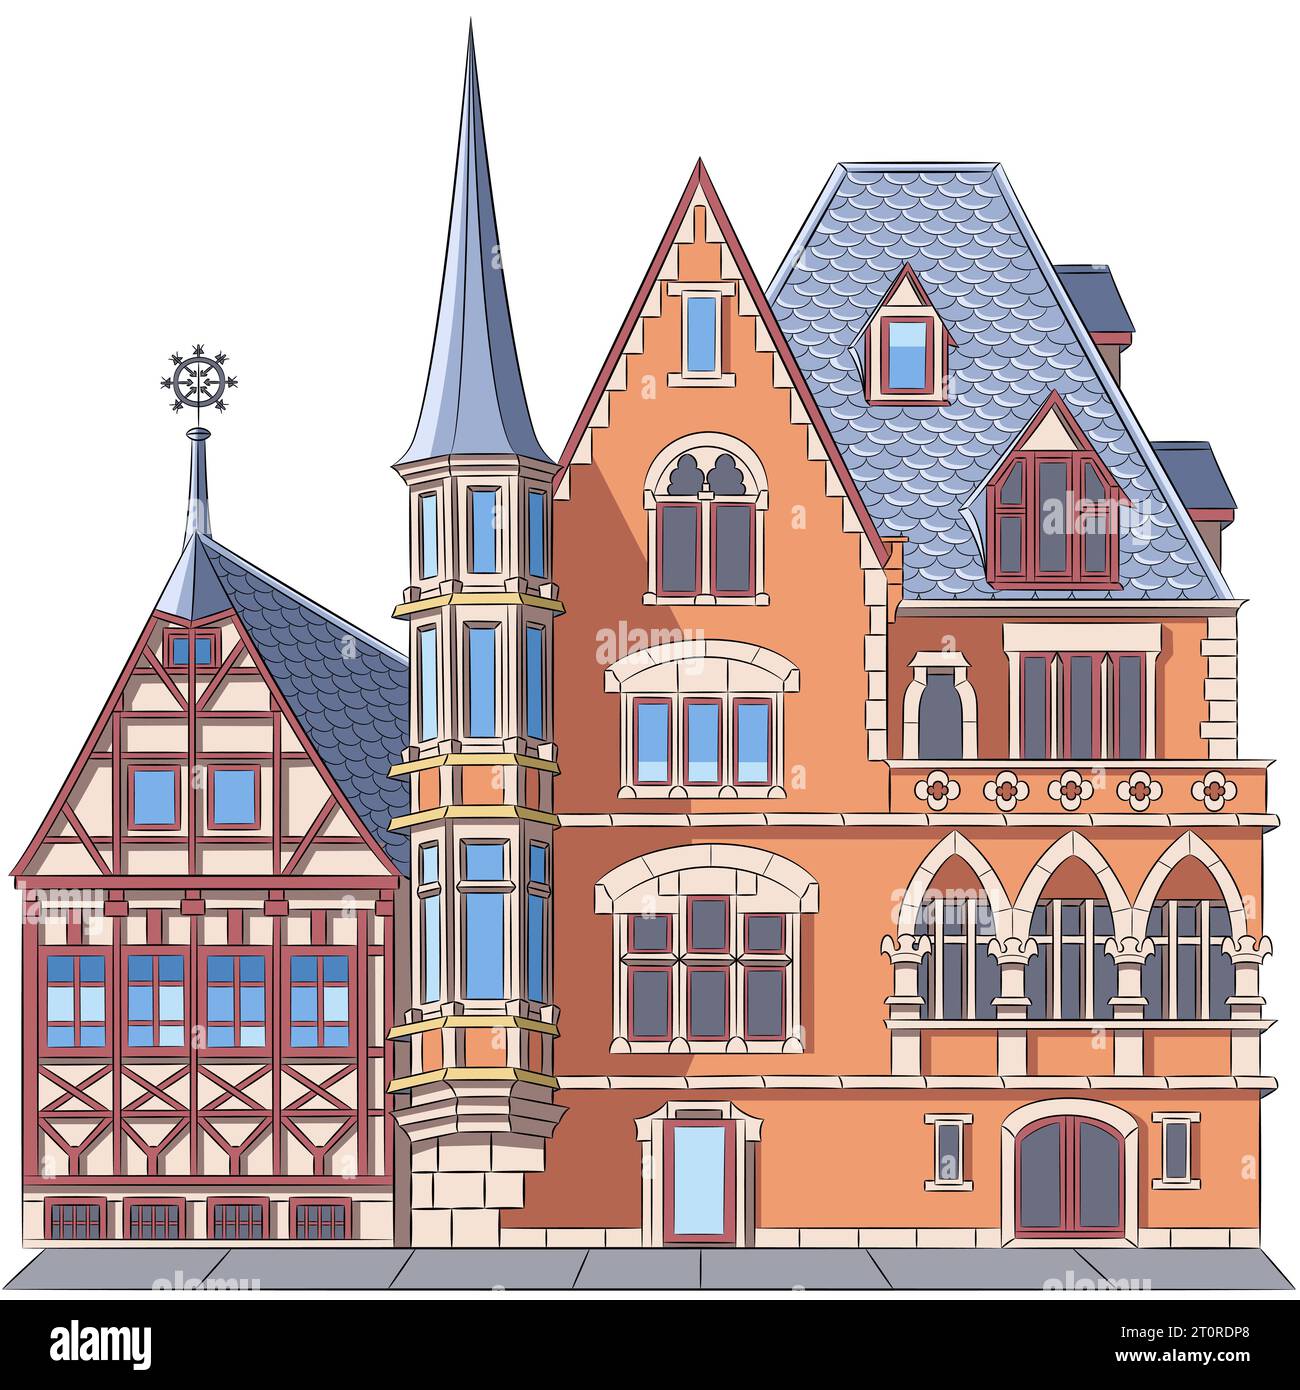 Dessin en couleur d'une vieille maison allemande traditionnelle à colombages et en pierre en Allemagne. Illustration de Vecteur